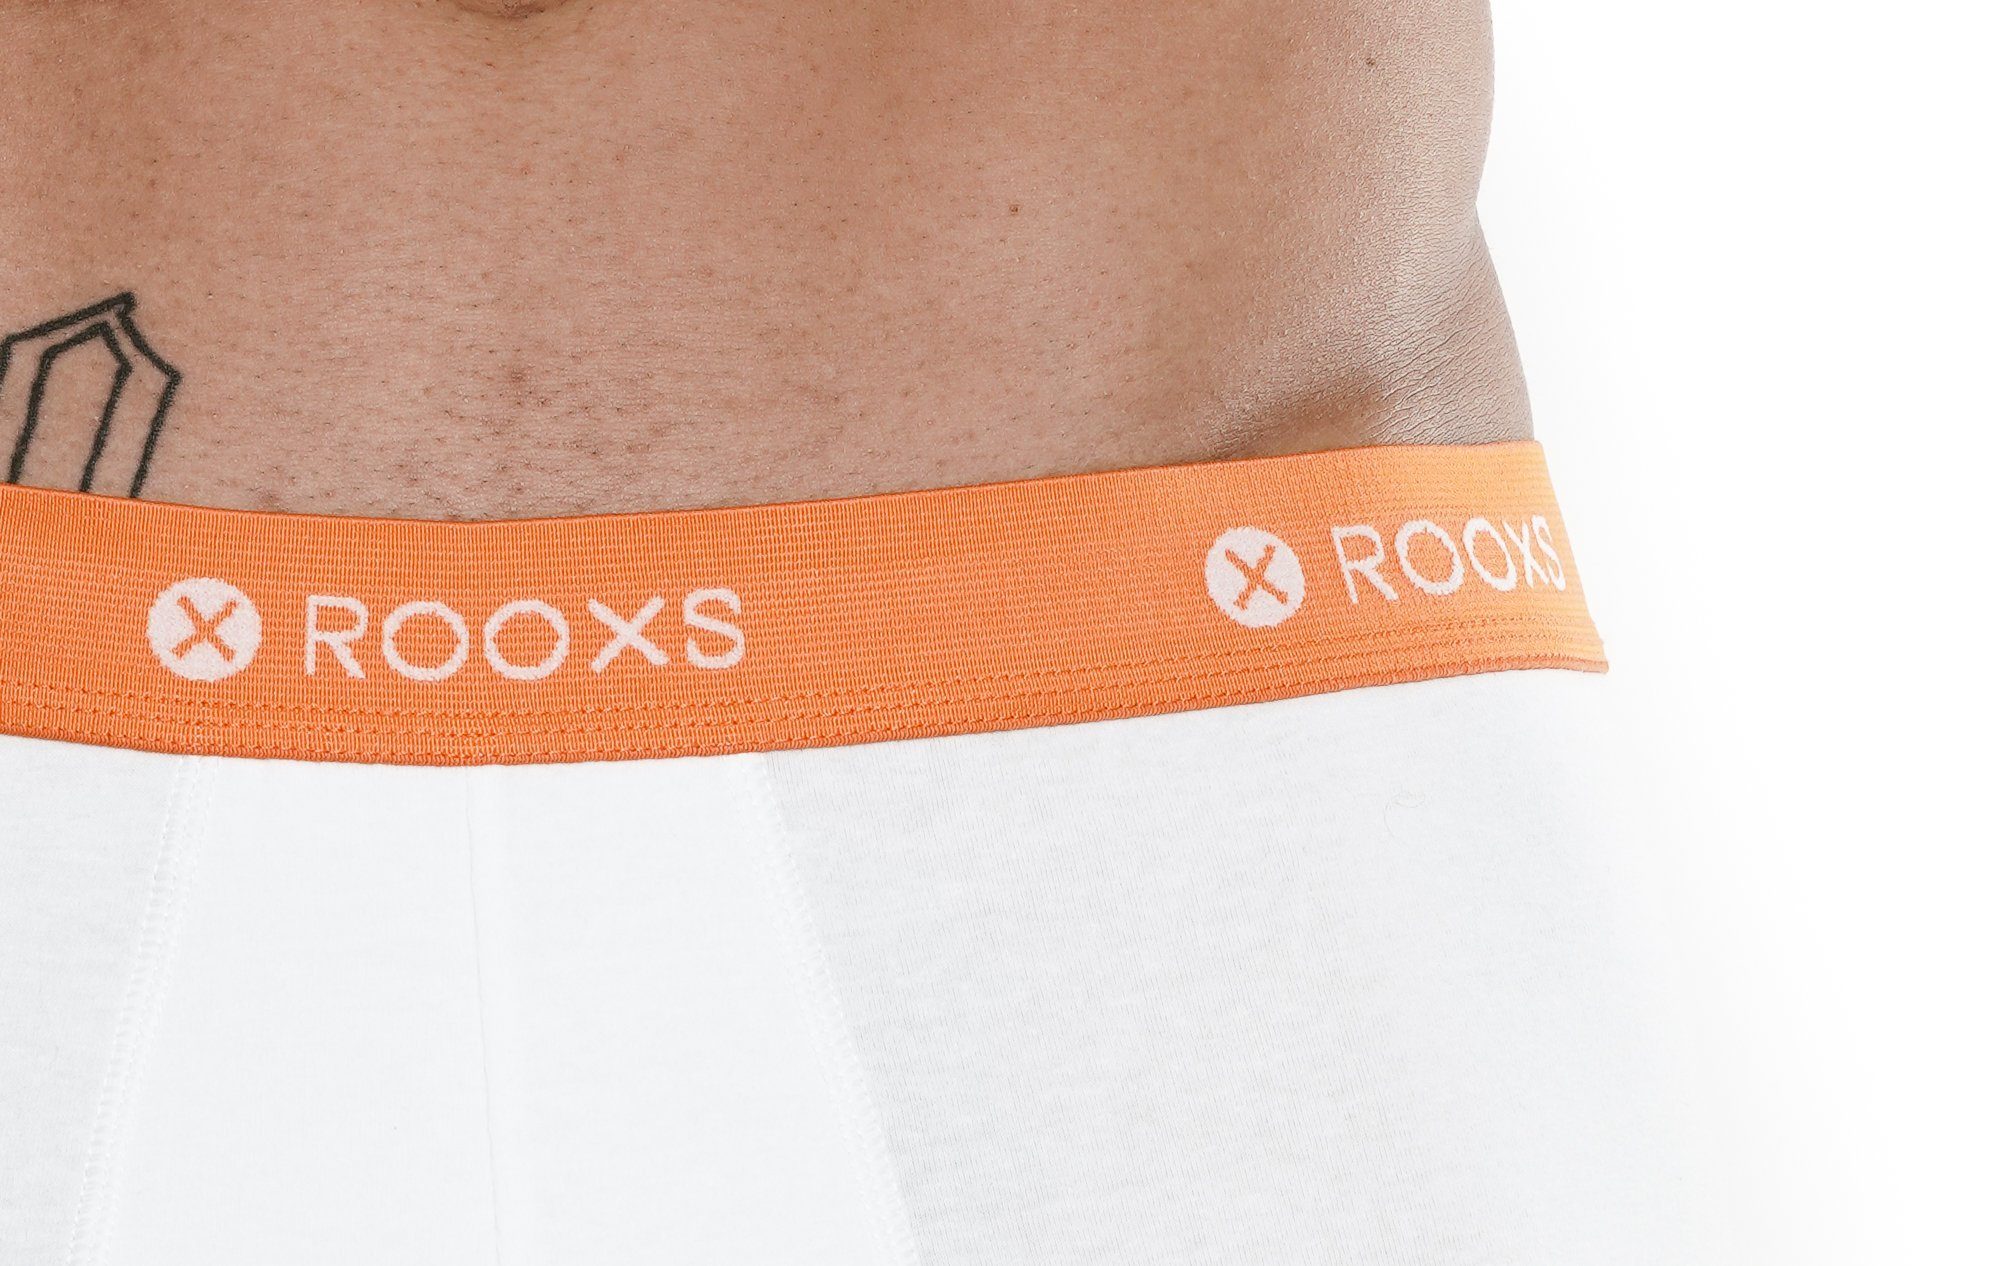 ROOXS - Herren (3-St) 03 Unterhosen Boxershorts Orange Weiß Männer Baumwolle Enge Retroshorts